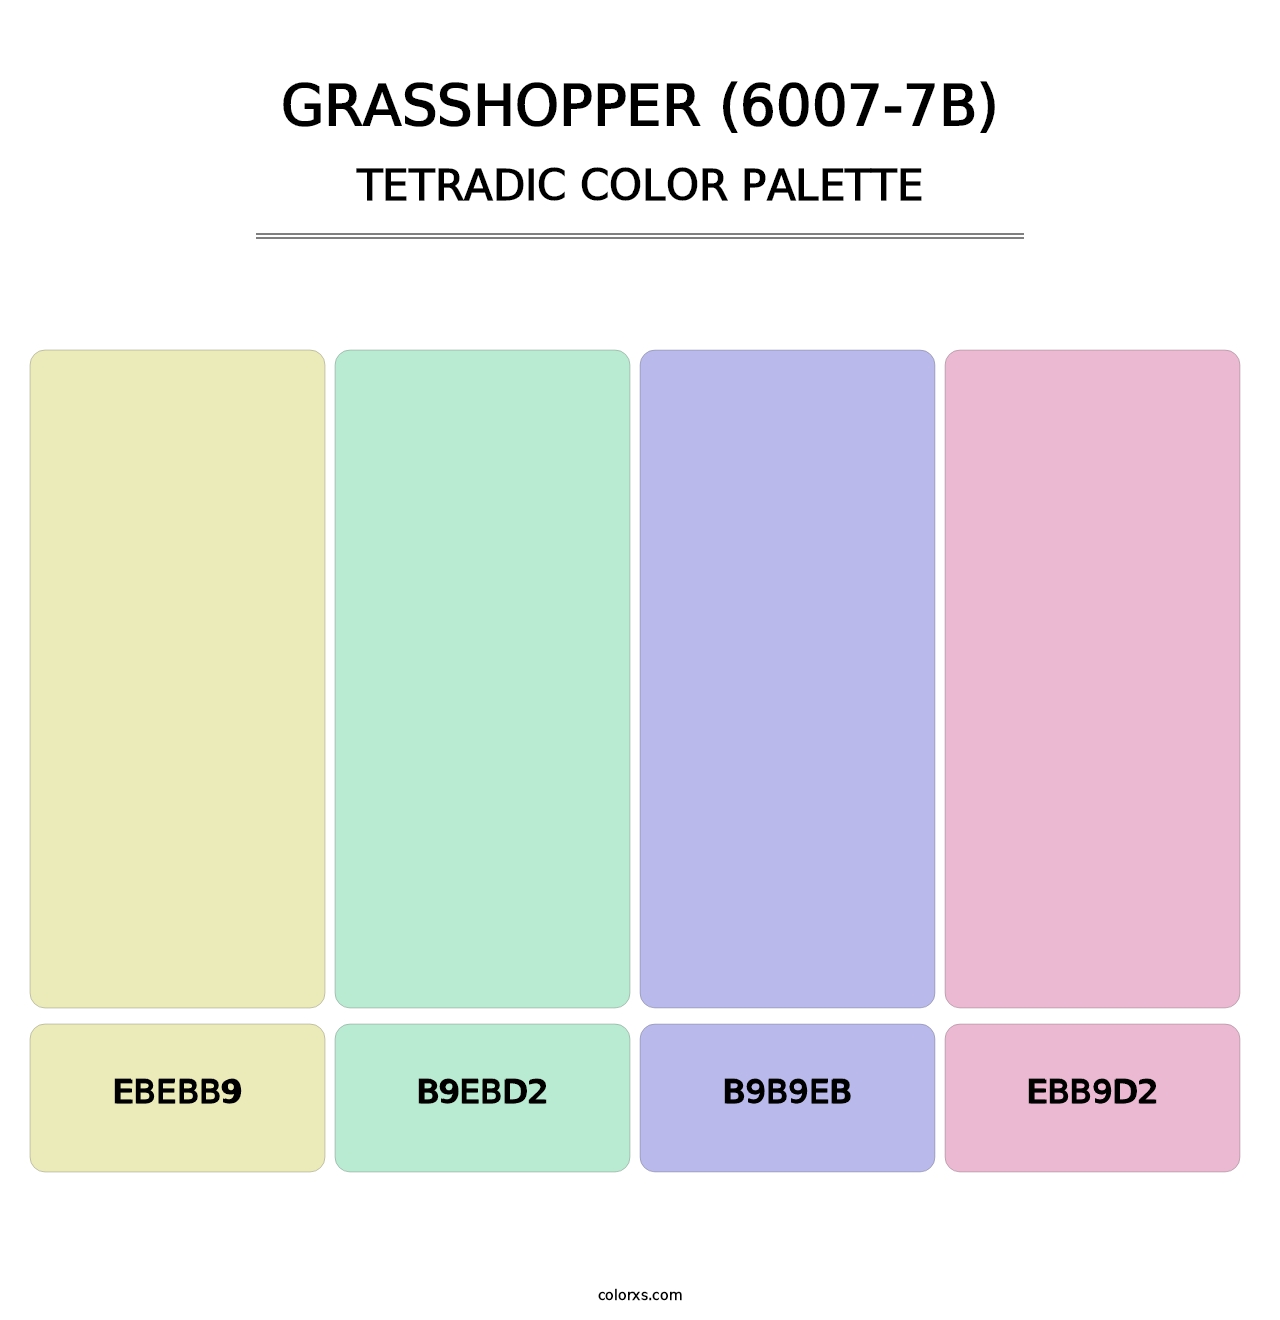 Grasshopper (6007-7B) - Tetradic Color Palette